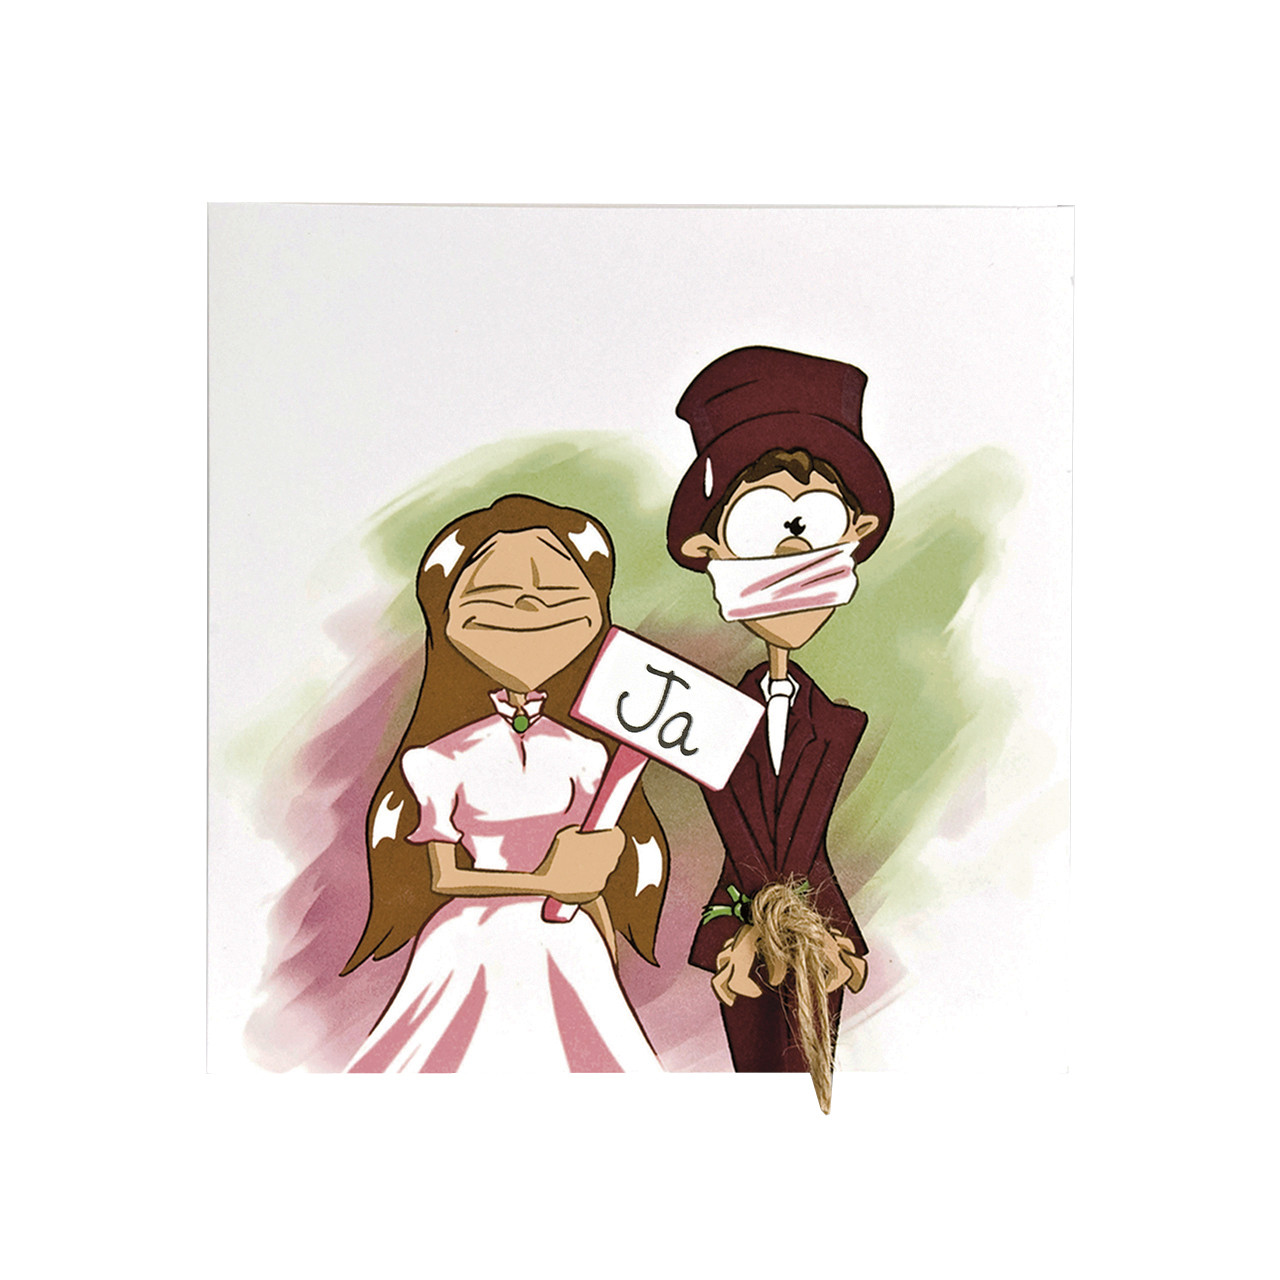 Hochzeit Lustig Comic
 Hochzeitskarte ic lustig Braut sagt ja Bräutigam erst